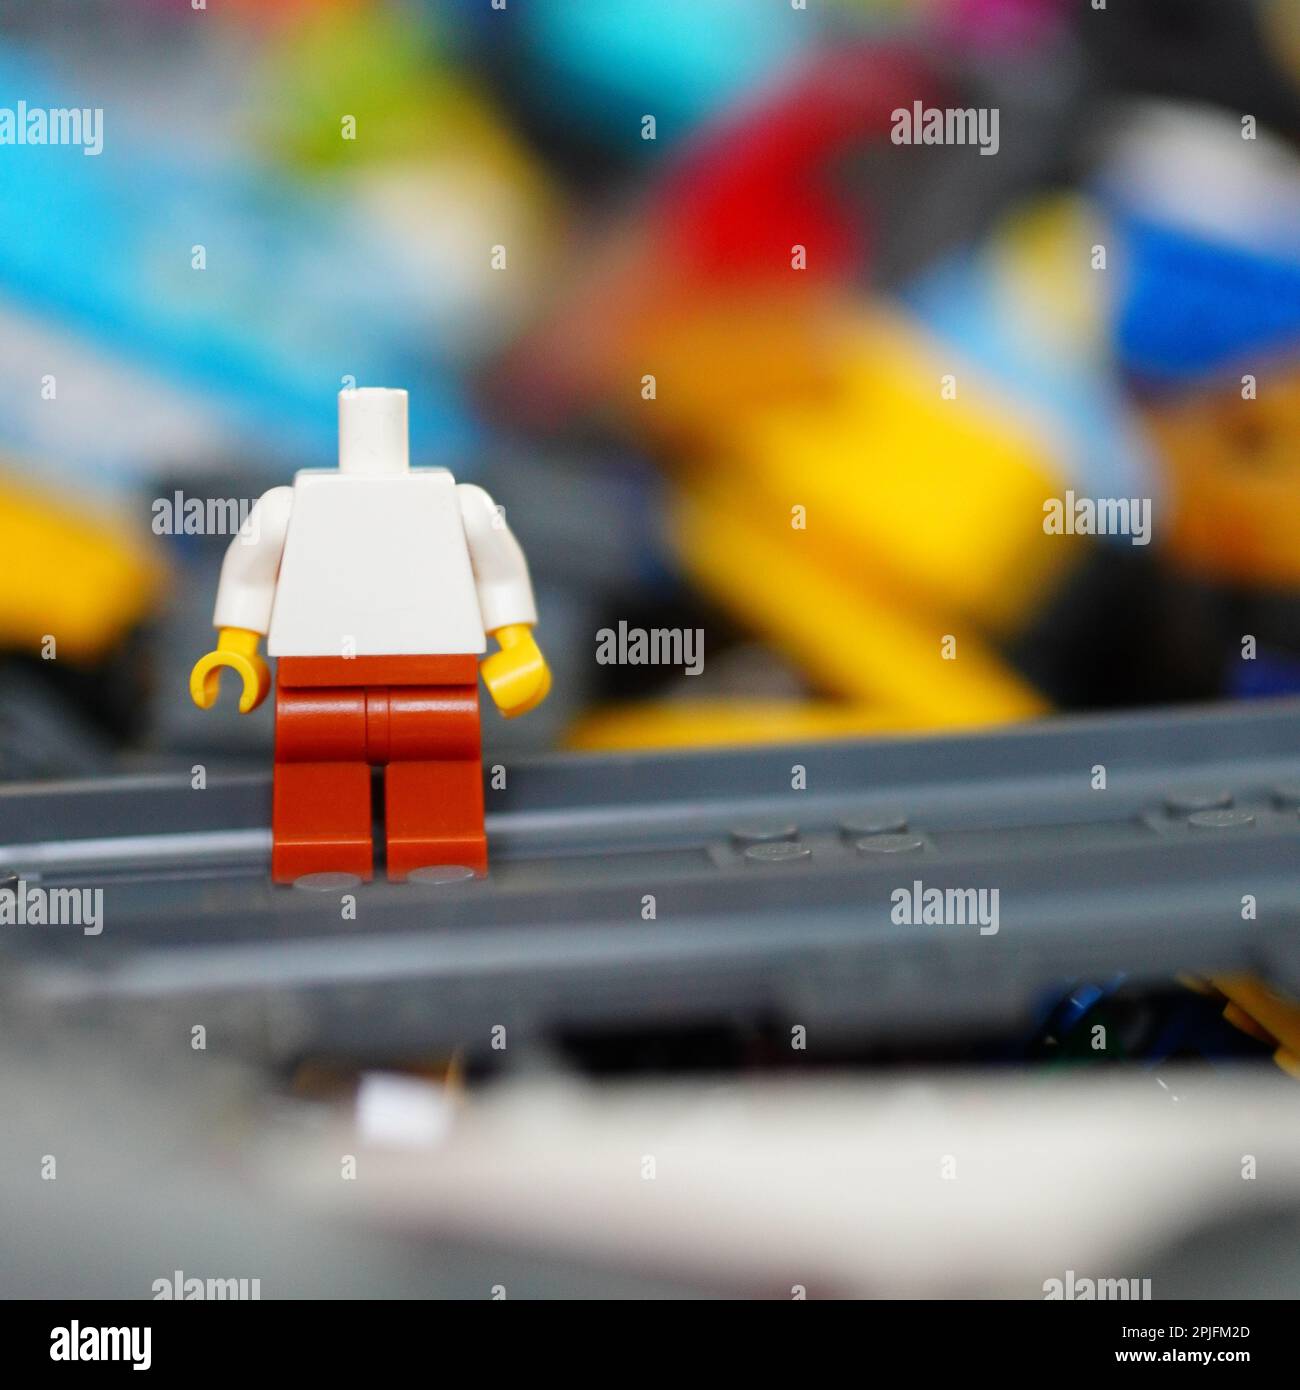 Stockfoto einer Lego-Figur ohne Kopf, aus dem Blickwinkel der Nahaufnahme aufgenommen Stockfoto